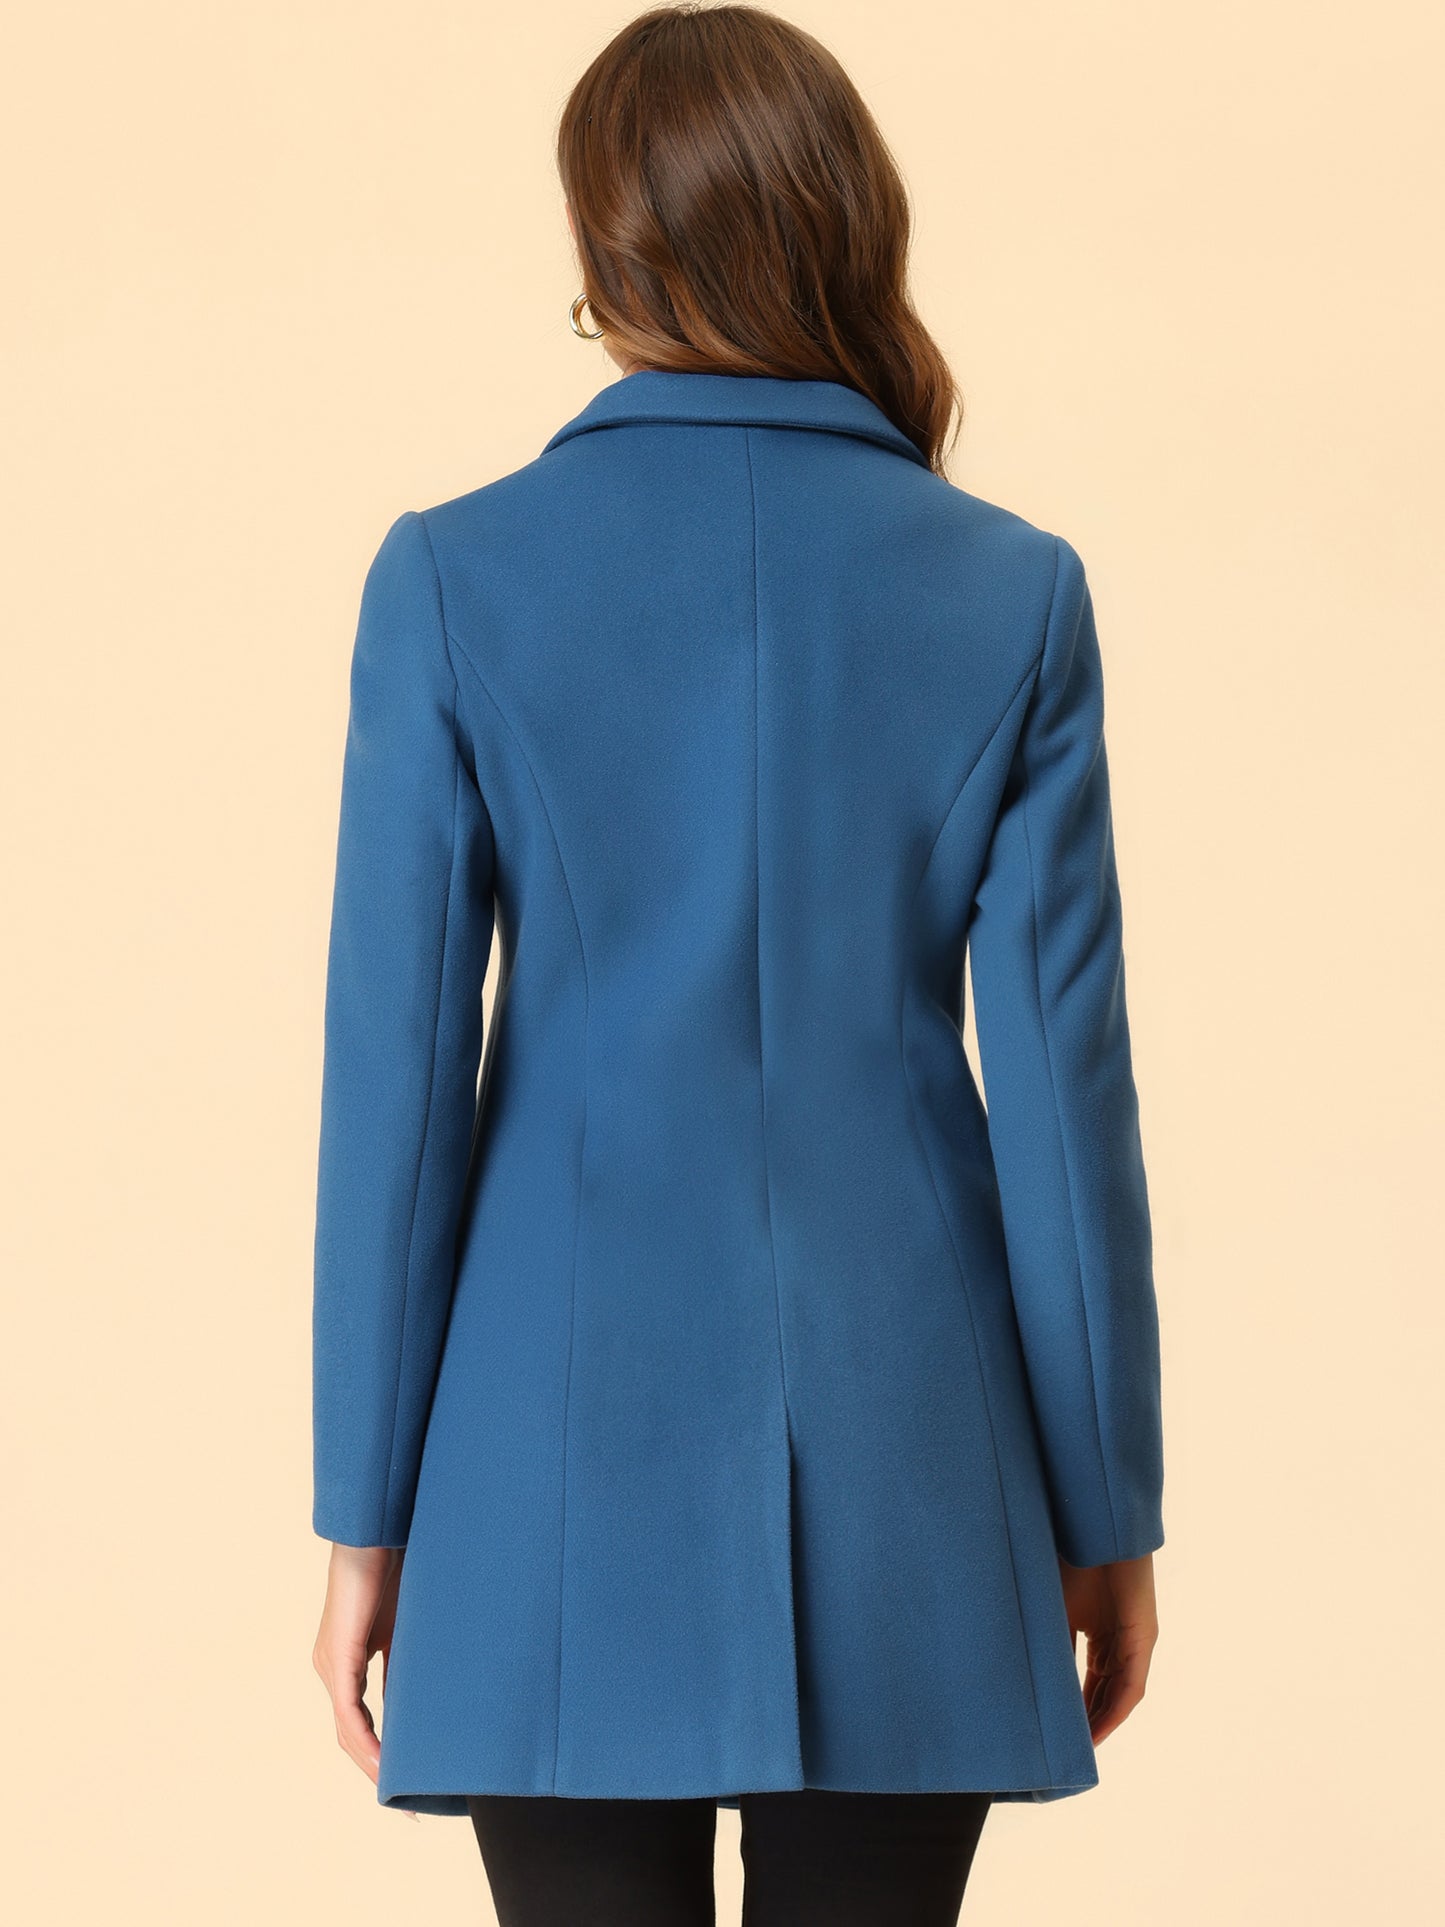 Allegra K Notched Lapel Single Breasted Outwear Winter Coat Dusty Blue